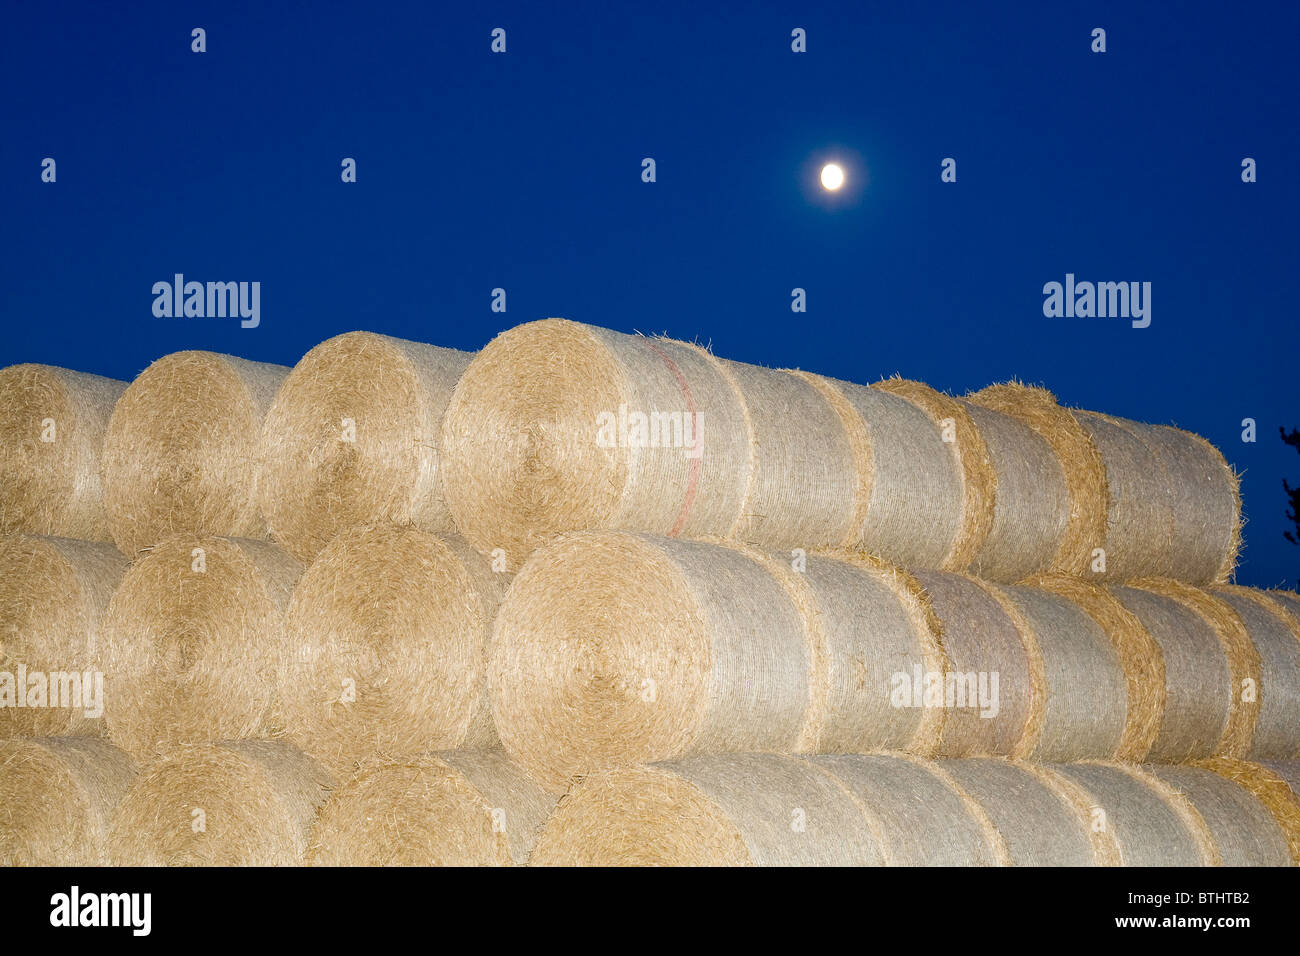 Circular Straw Bales at Night with Moon Stock Photo